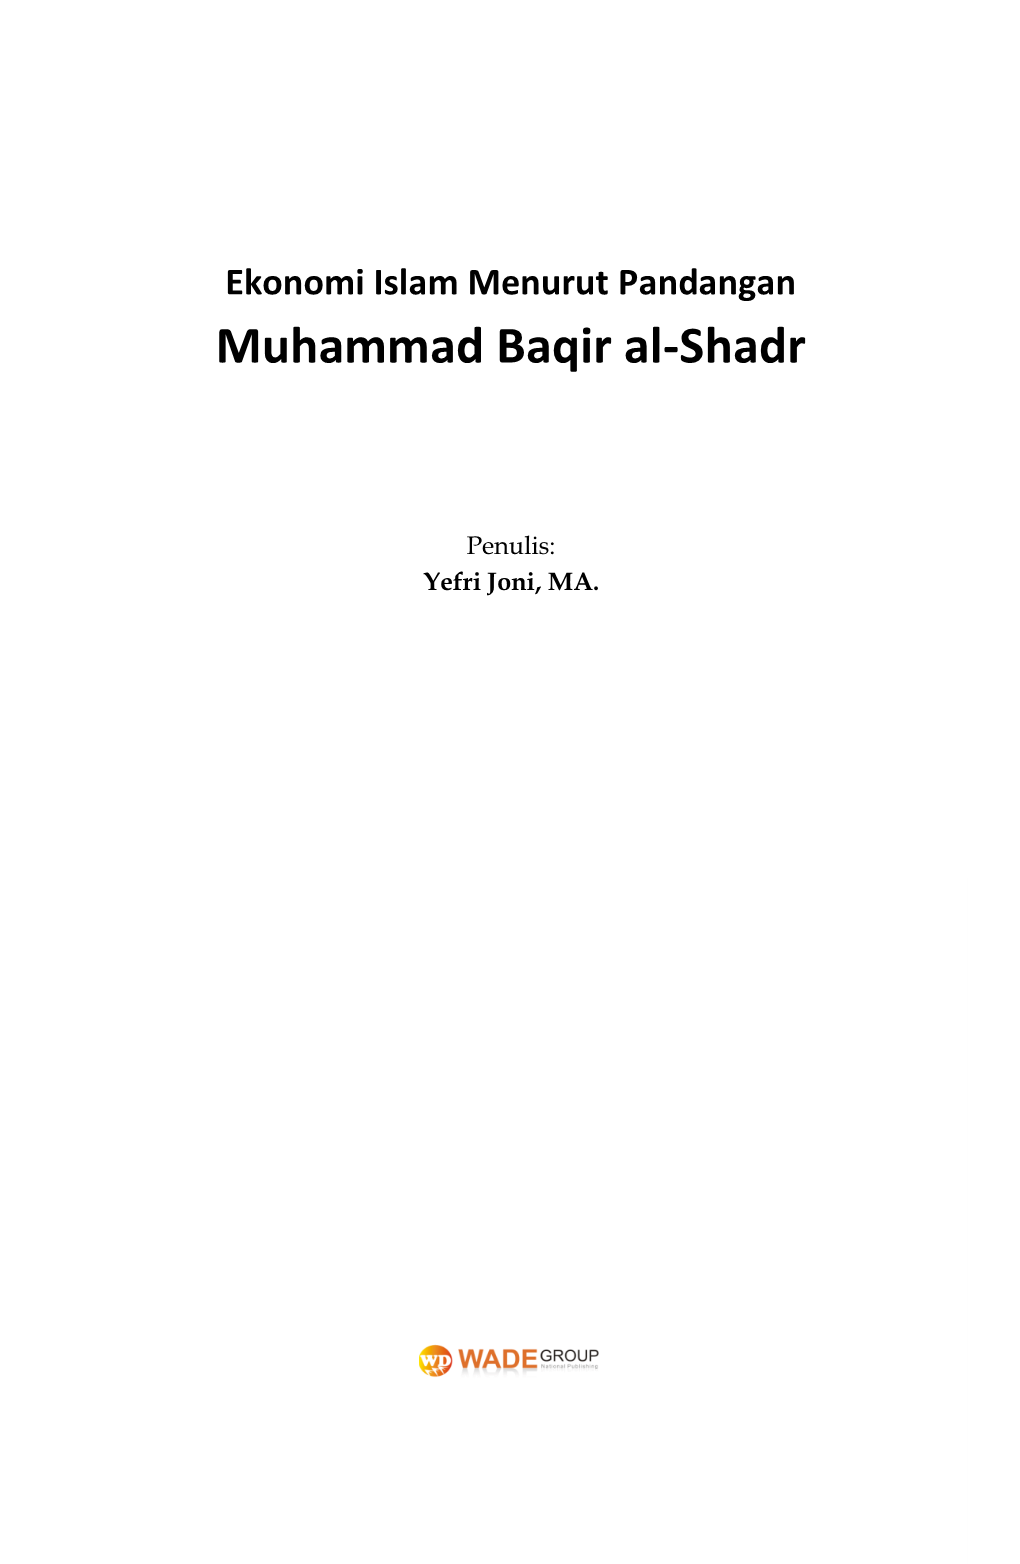 Muhammad Baqir Al-Shadr